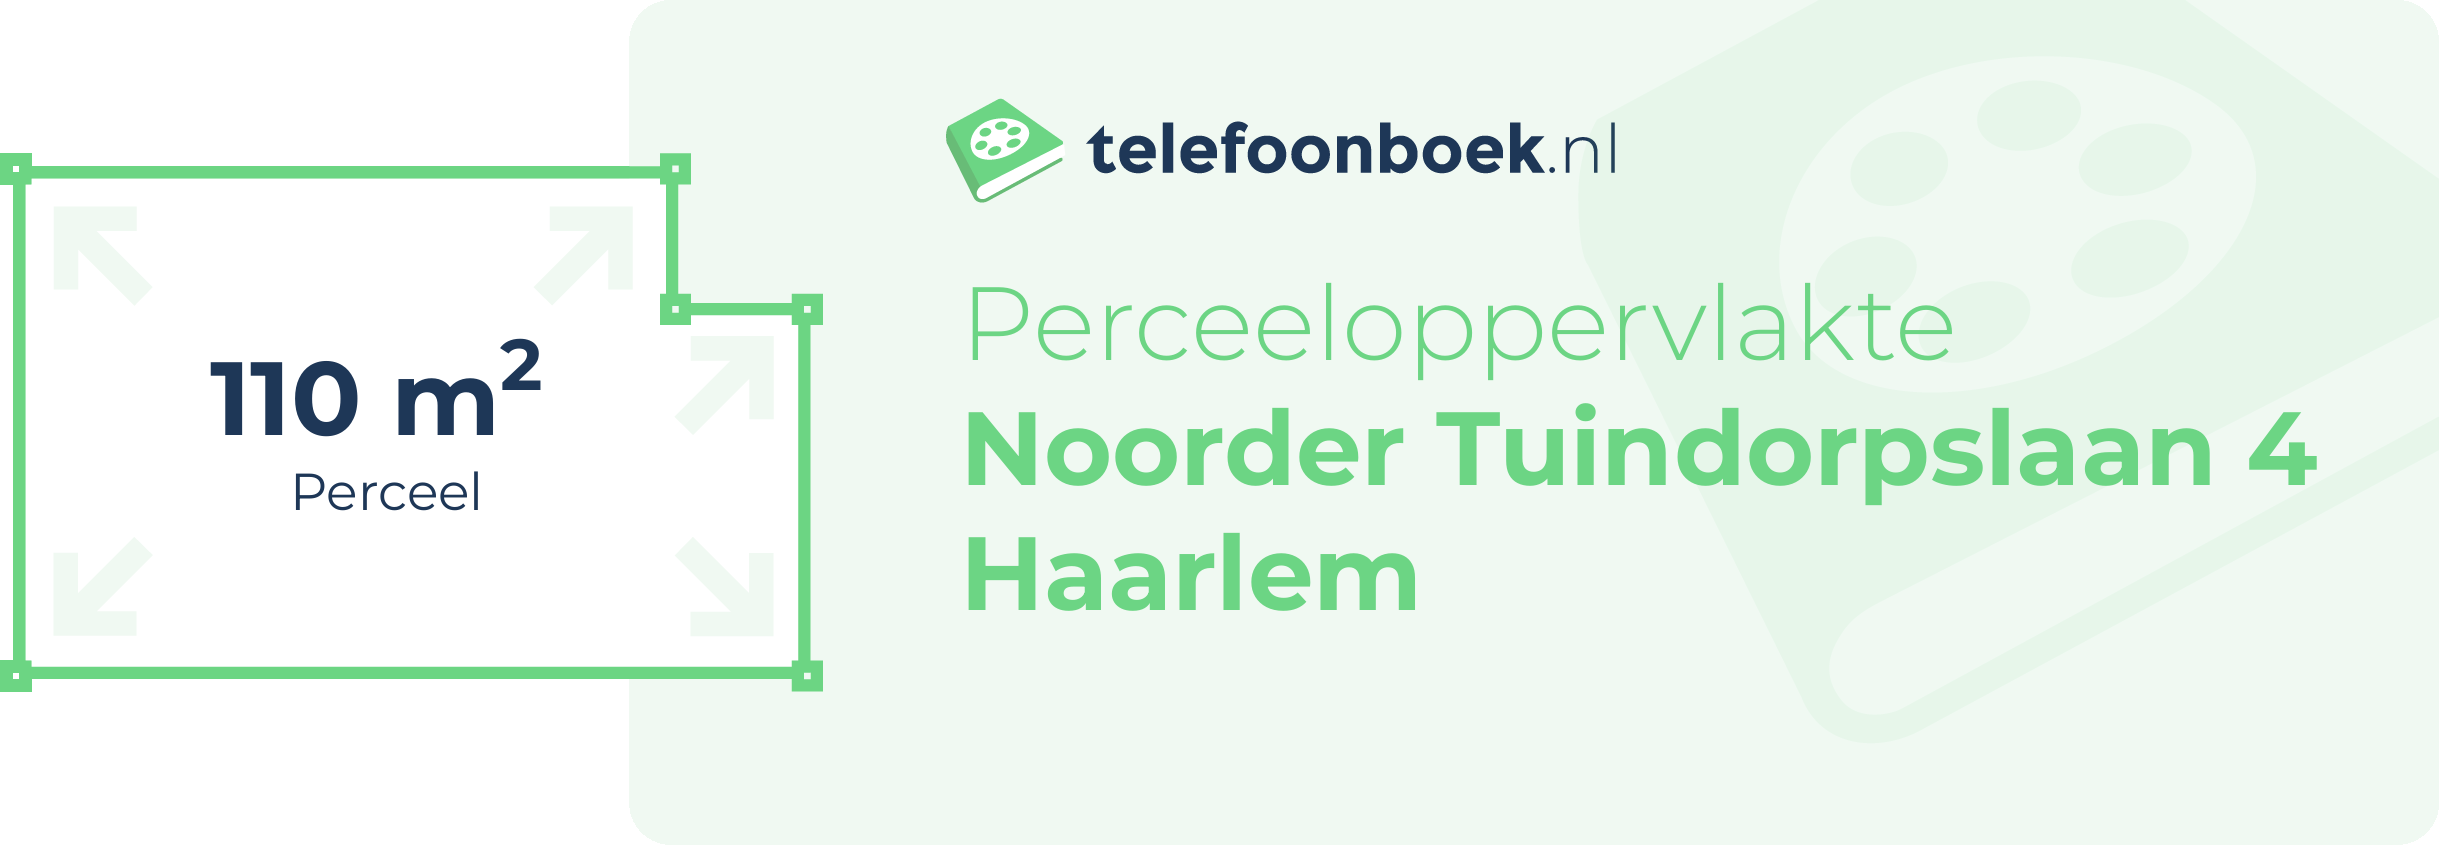 Perceeloppervlakte Noorder Tuindorpslaan 4 Haarlem